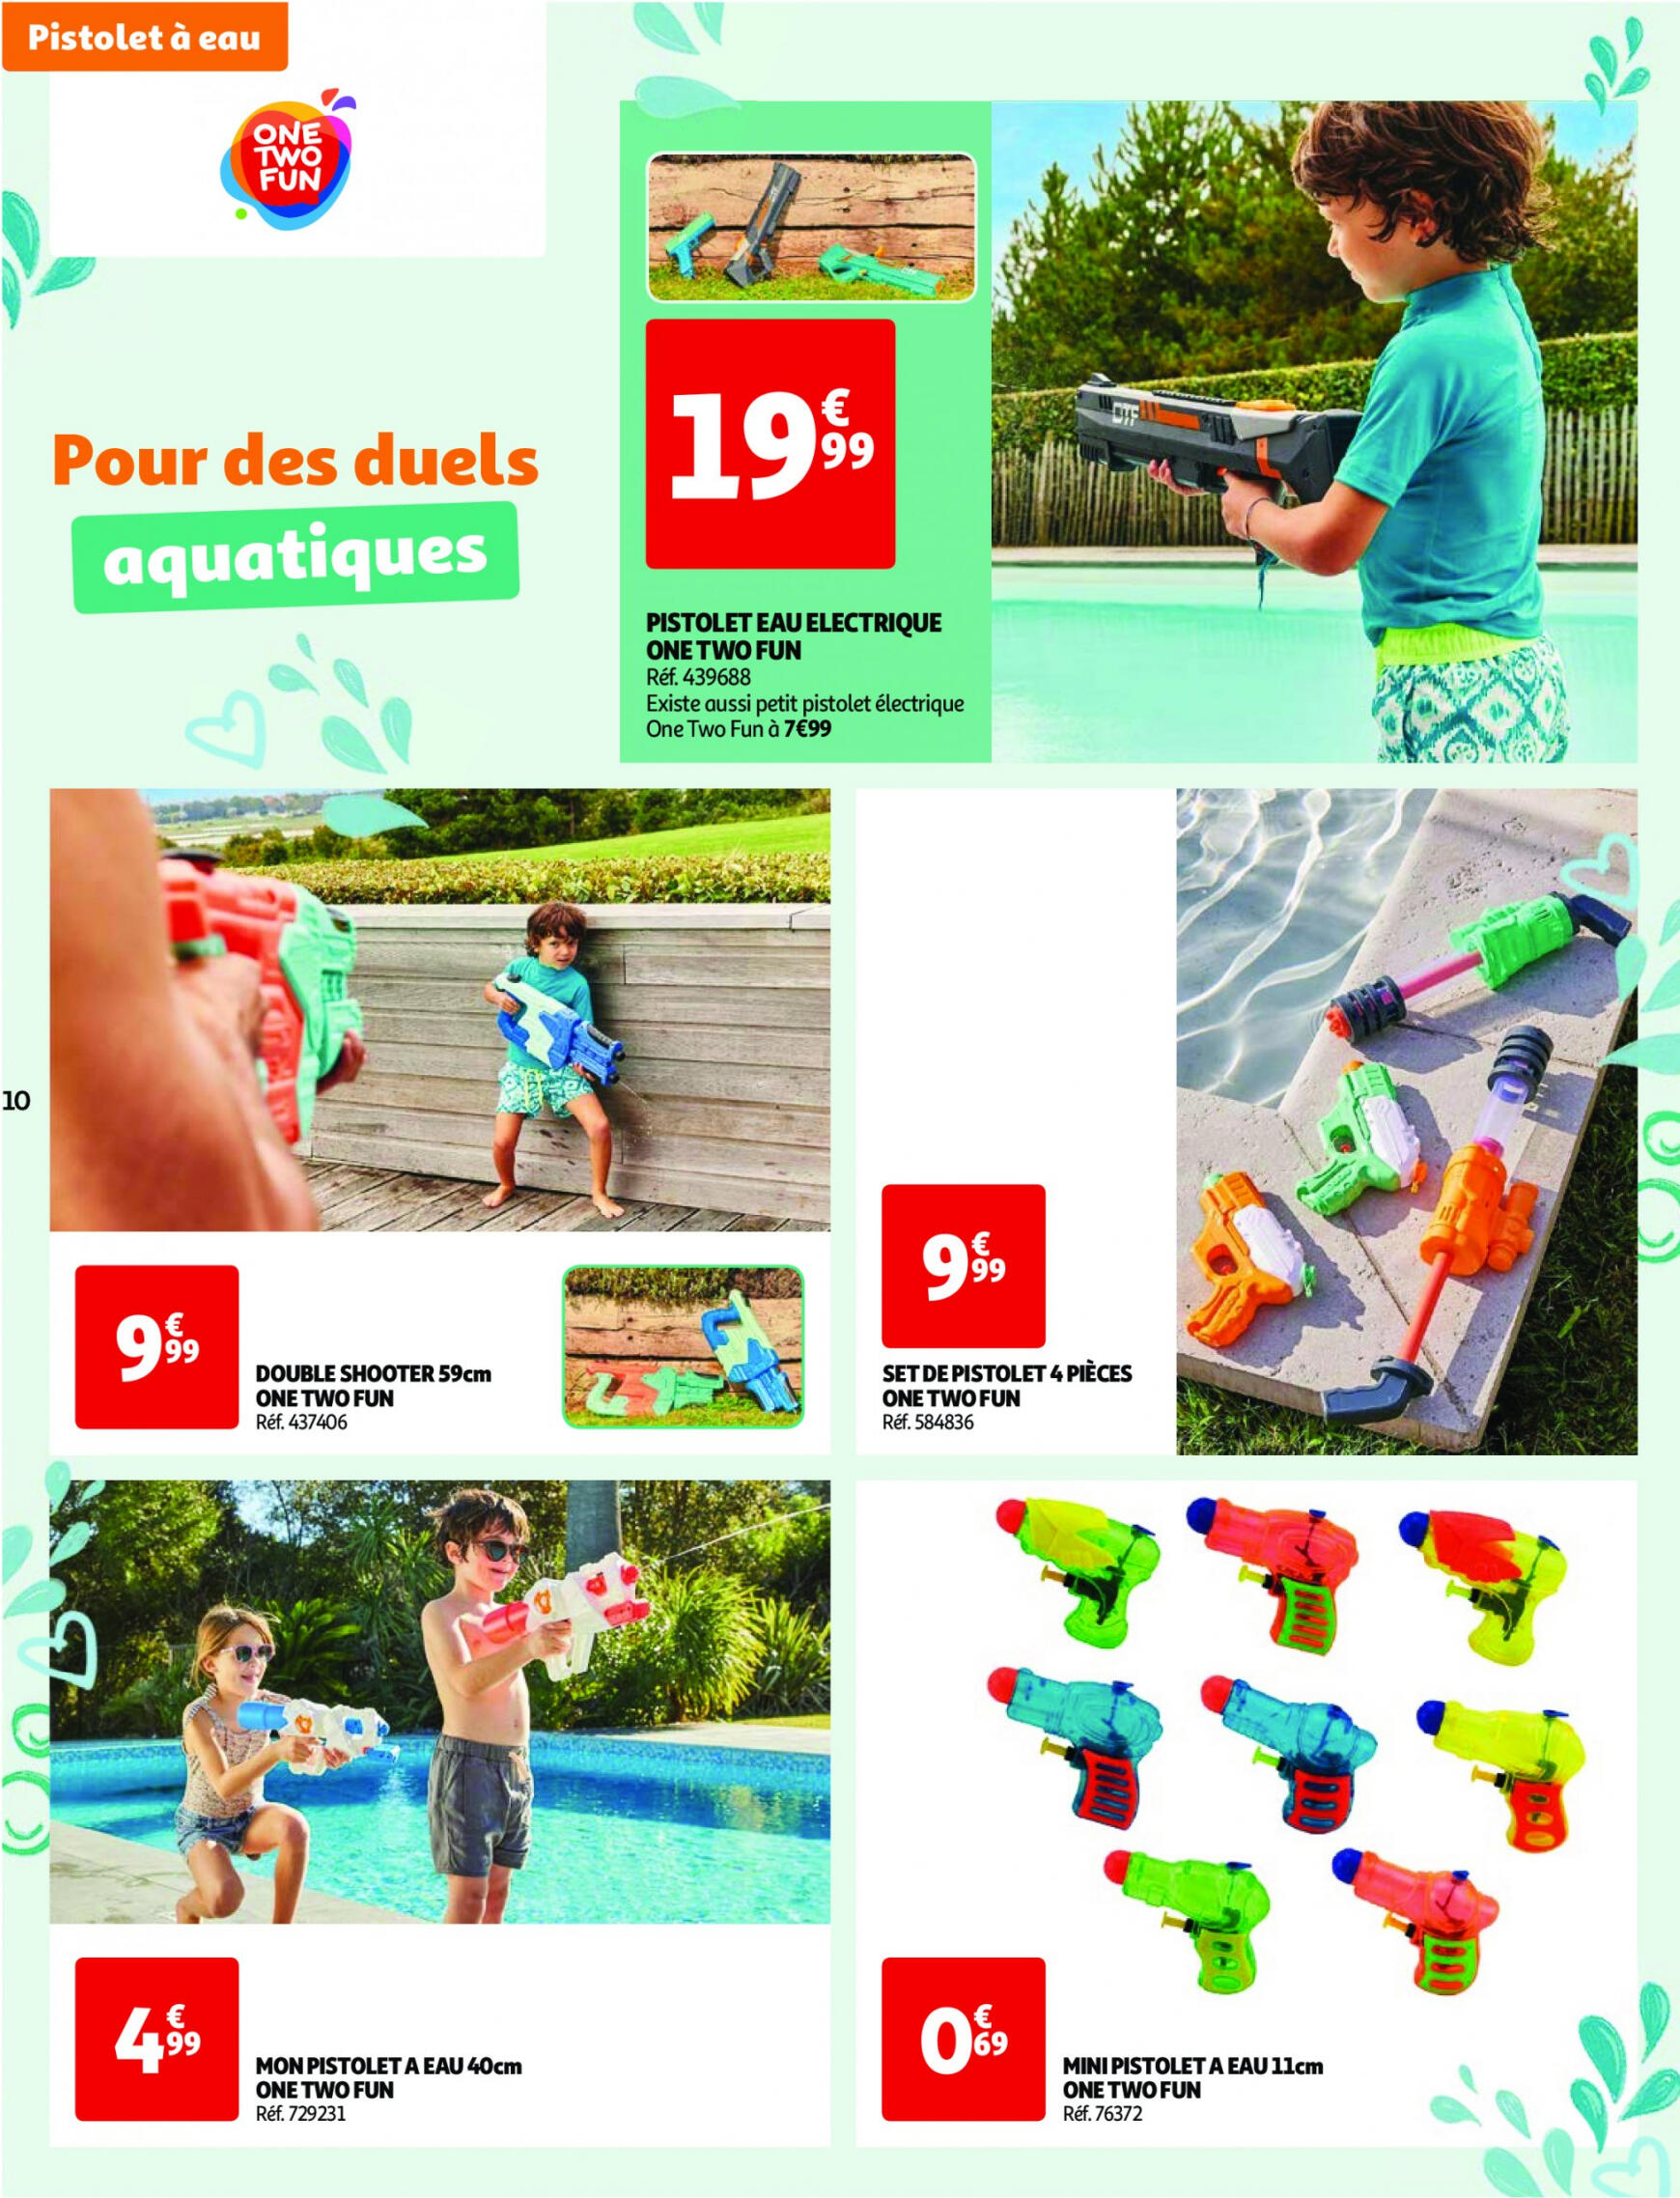 auchan - Auchan - Nos exclusivités Summer pour s'amuser tout l'été folder huidig 14.05. - 15.06. - page: 10